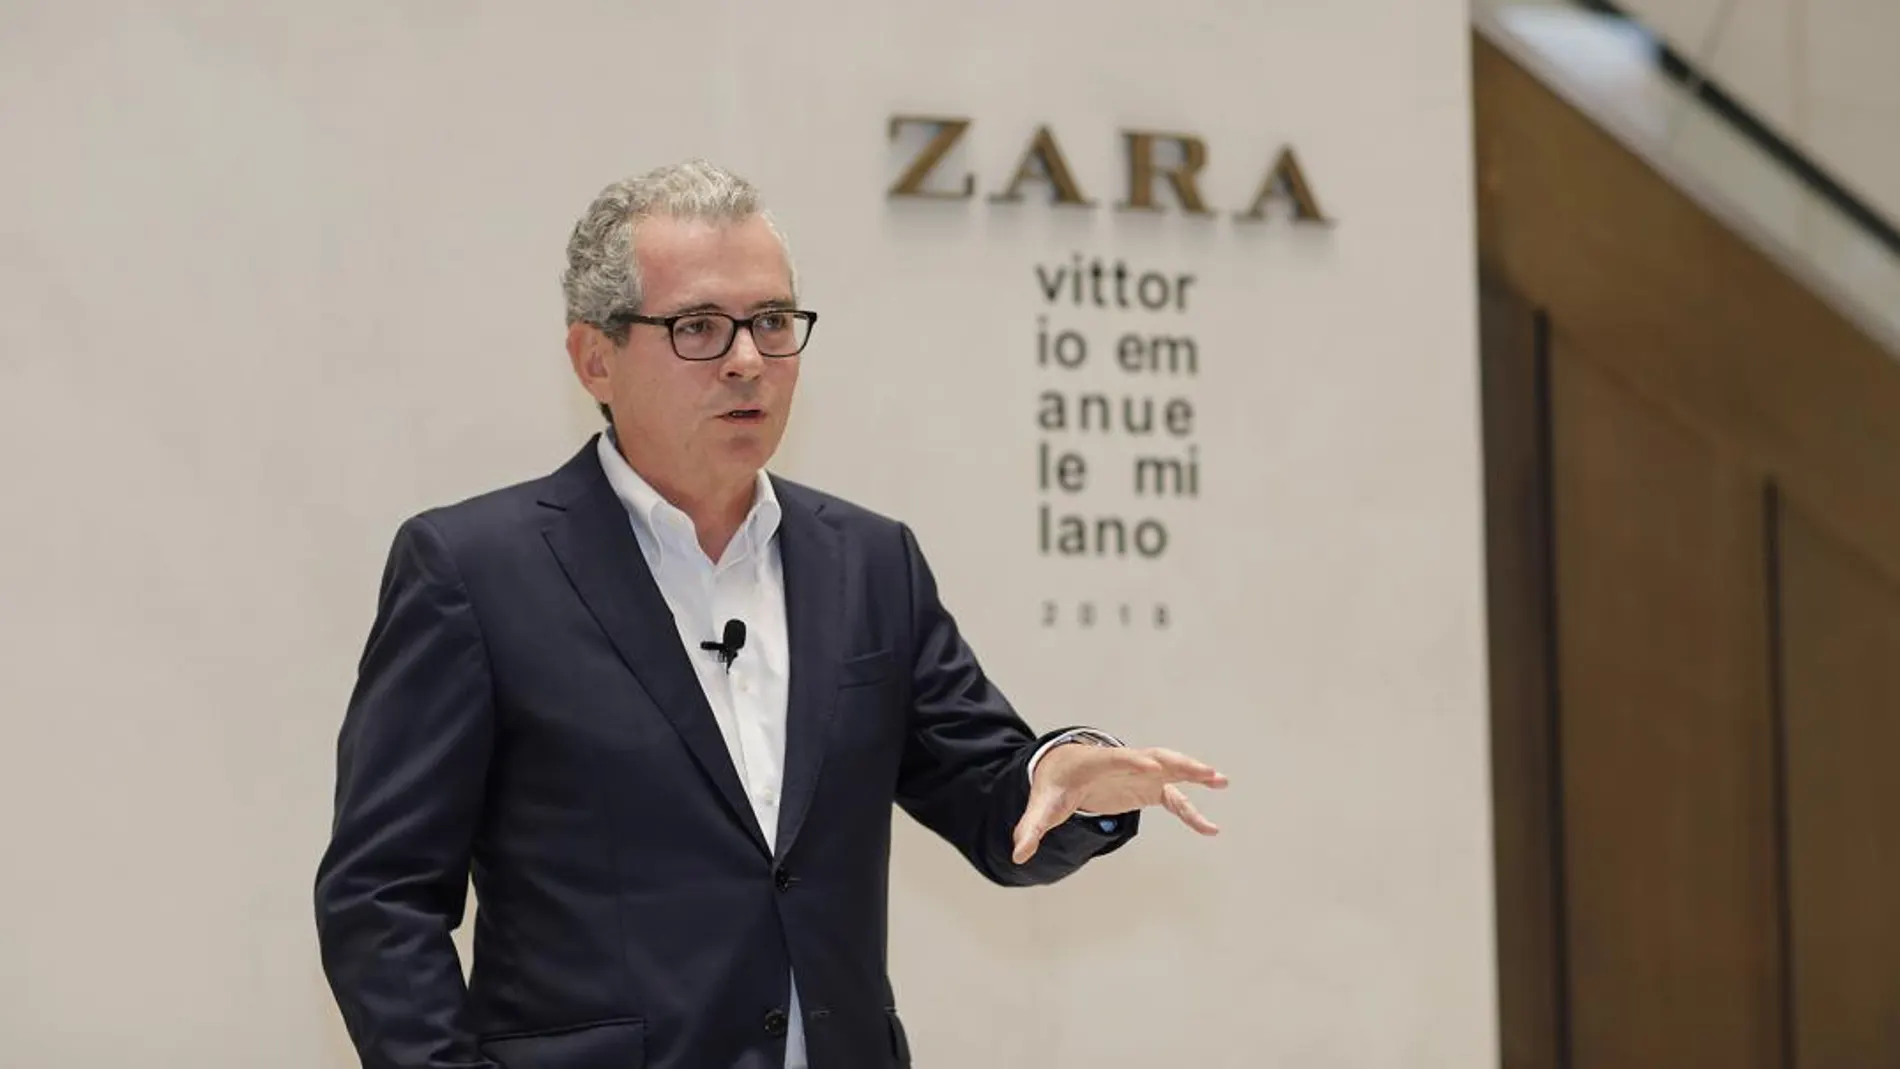 Pablo Isla, en el encuentro con periodistas en Milán, con motivo de la inauguración de la emblemática tienda de Zara de Corso Vittorio Emanuele.